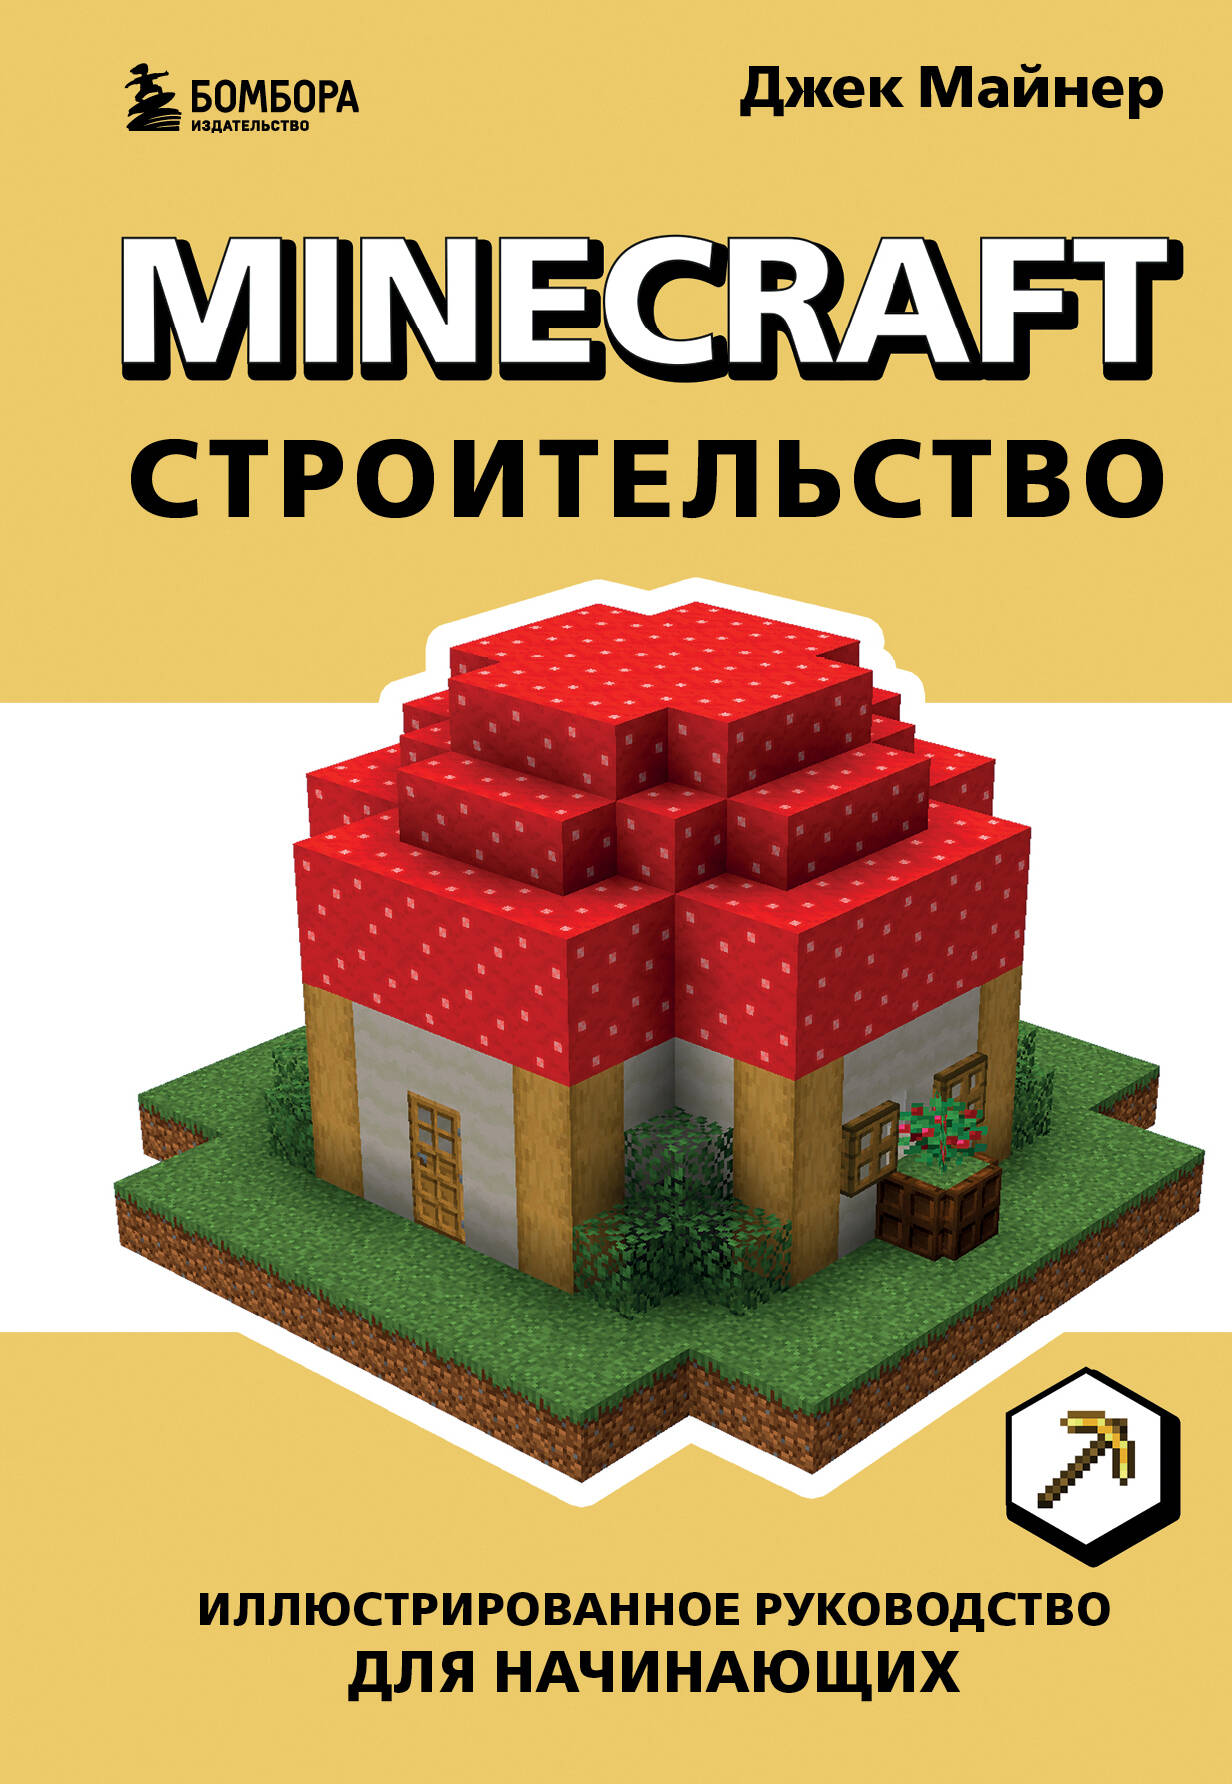 Майнер Джек Minecraft. Строительство. Иллюстрированное руководство для начинающих б у майнер биткоинов love core a1 24t sha256 btc asic майнер экономичный чем antminer s9 s17 t17 s9k innosilicon t3 t2t m20s m21s e12